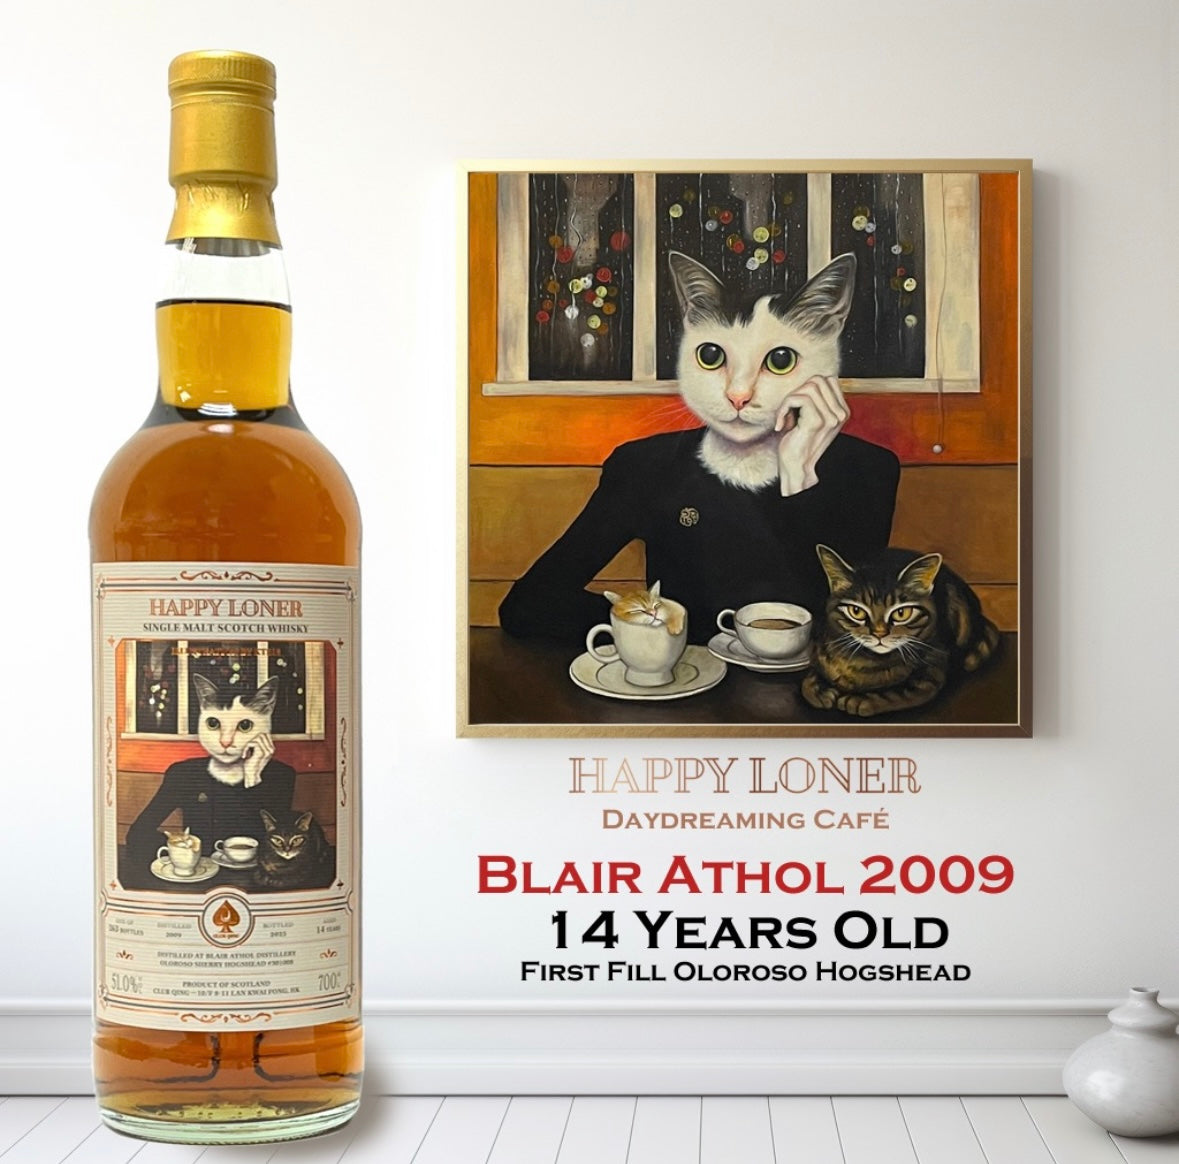 Blair Athol 14 Year Old 2009 “Happy Loner #1 - Daydreaming Café” by Club Qing Single Malt Scotch Whisky